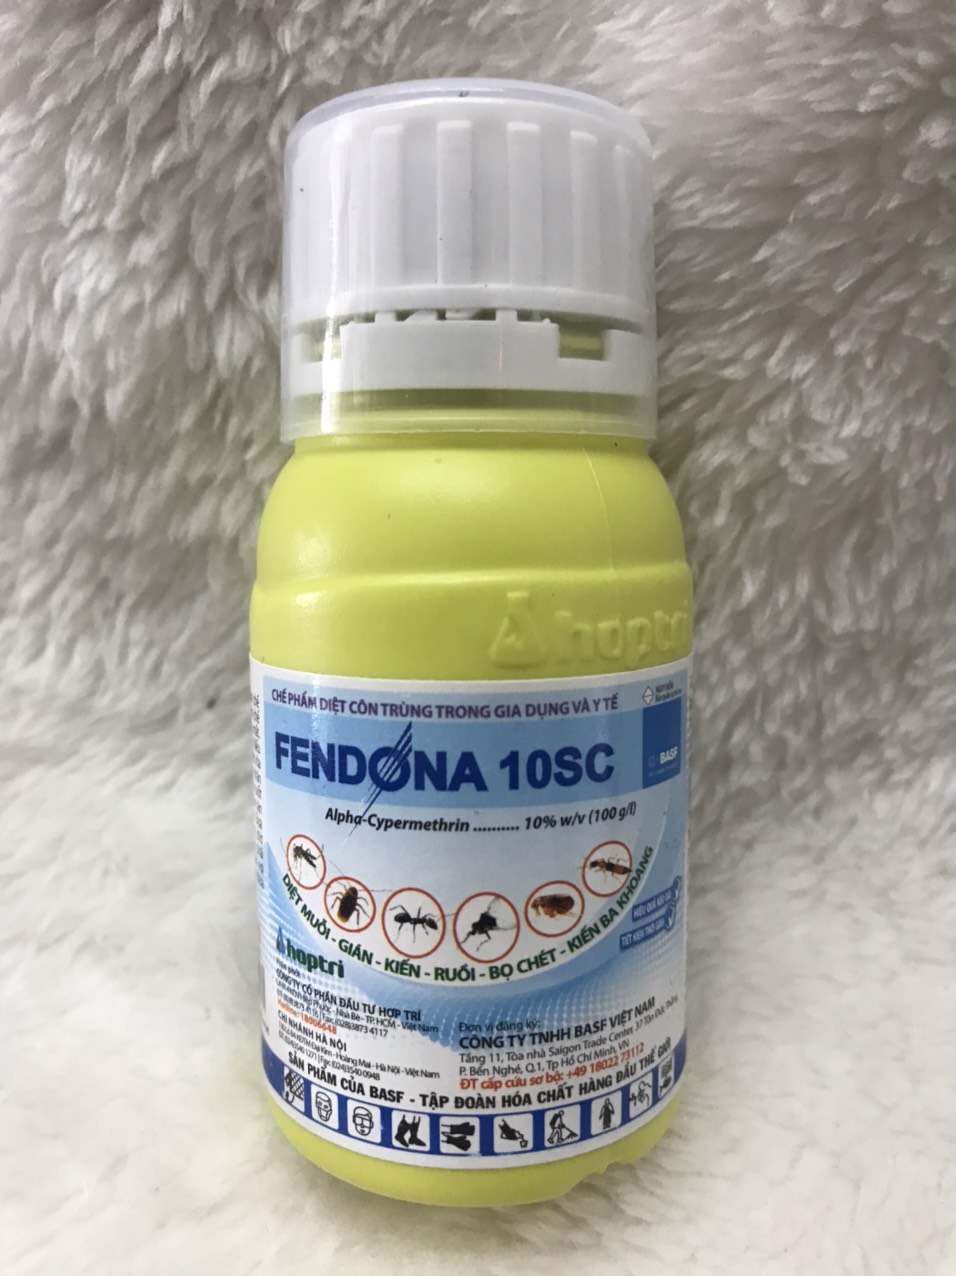 Fendona 10SC Chai 50ml - Diệt côn trùng ruồi, muỗi, kiến, gián, bọ chét